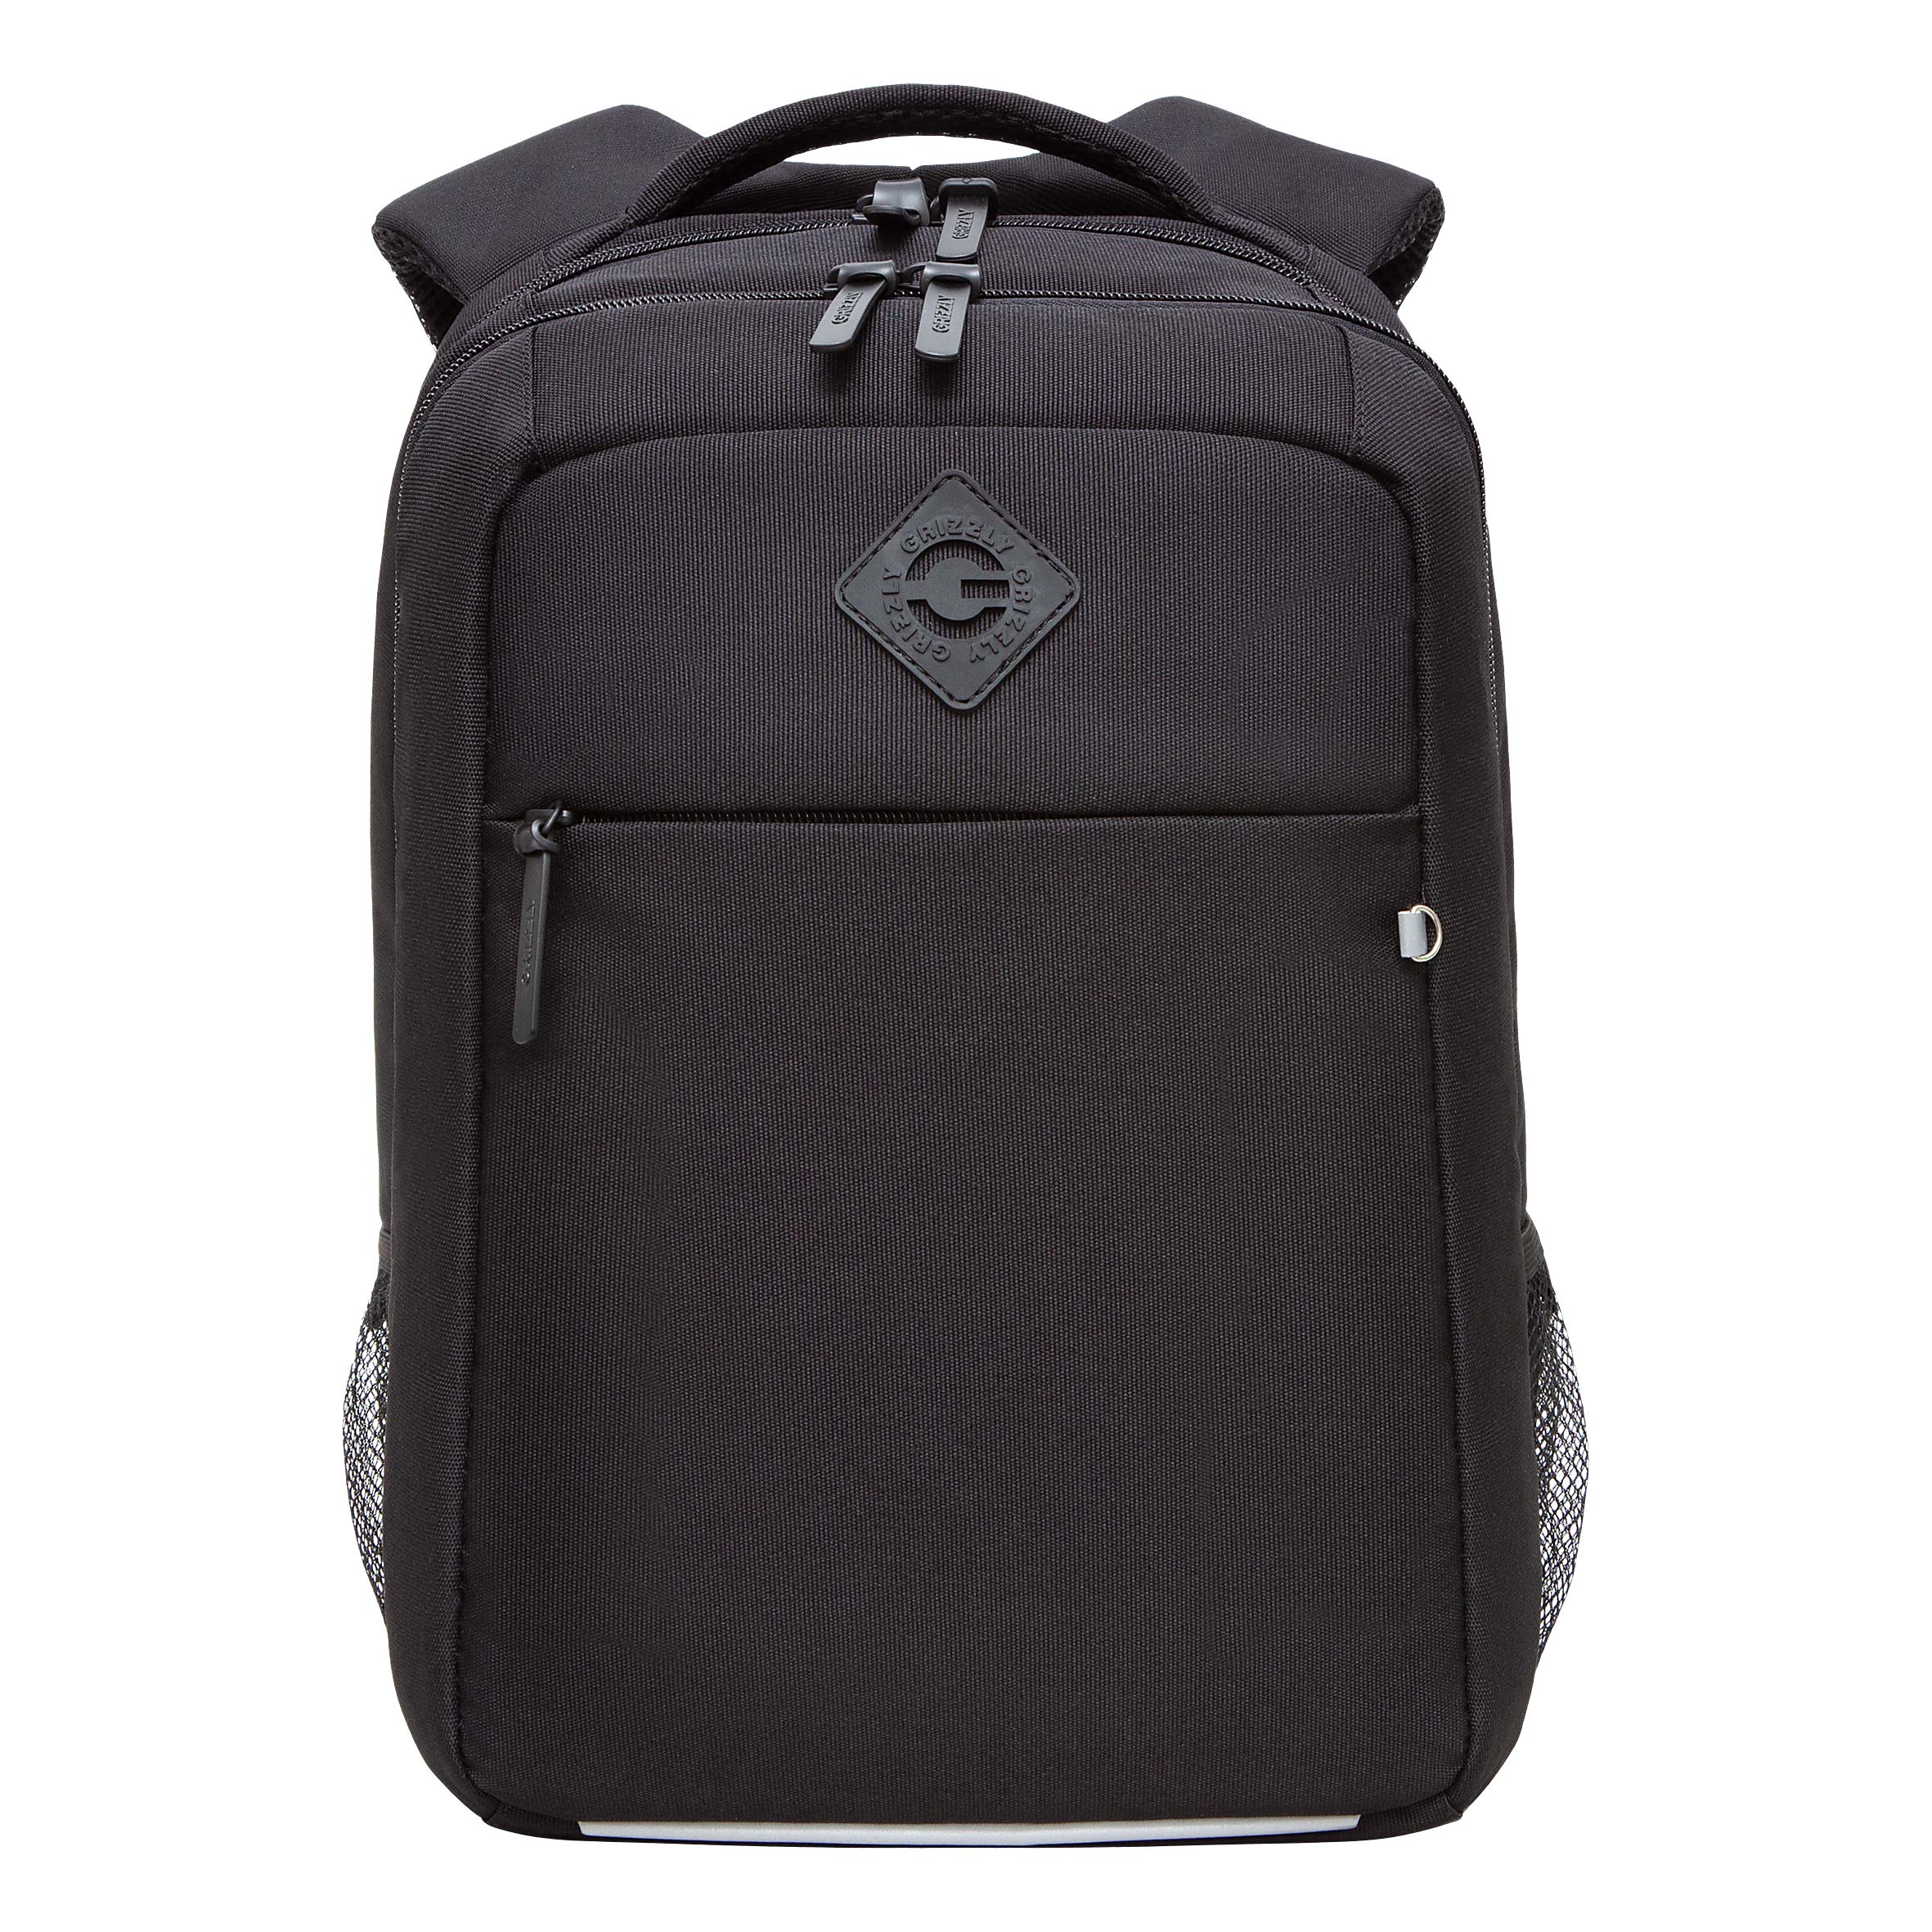 Рюкзак GRIZZLY с карманом для ноутбука 13, анатомический, для мальчика RB-456-11 рюкзак для ноутбука 15 6 portcase kbp 132gr